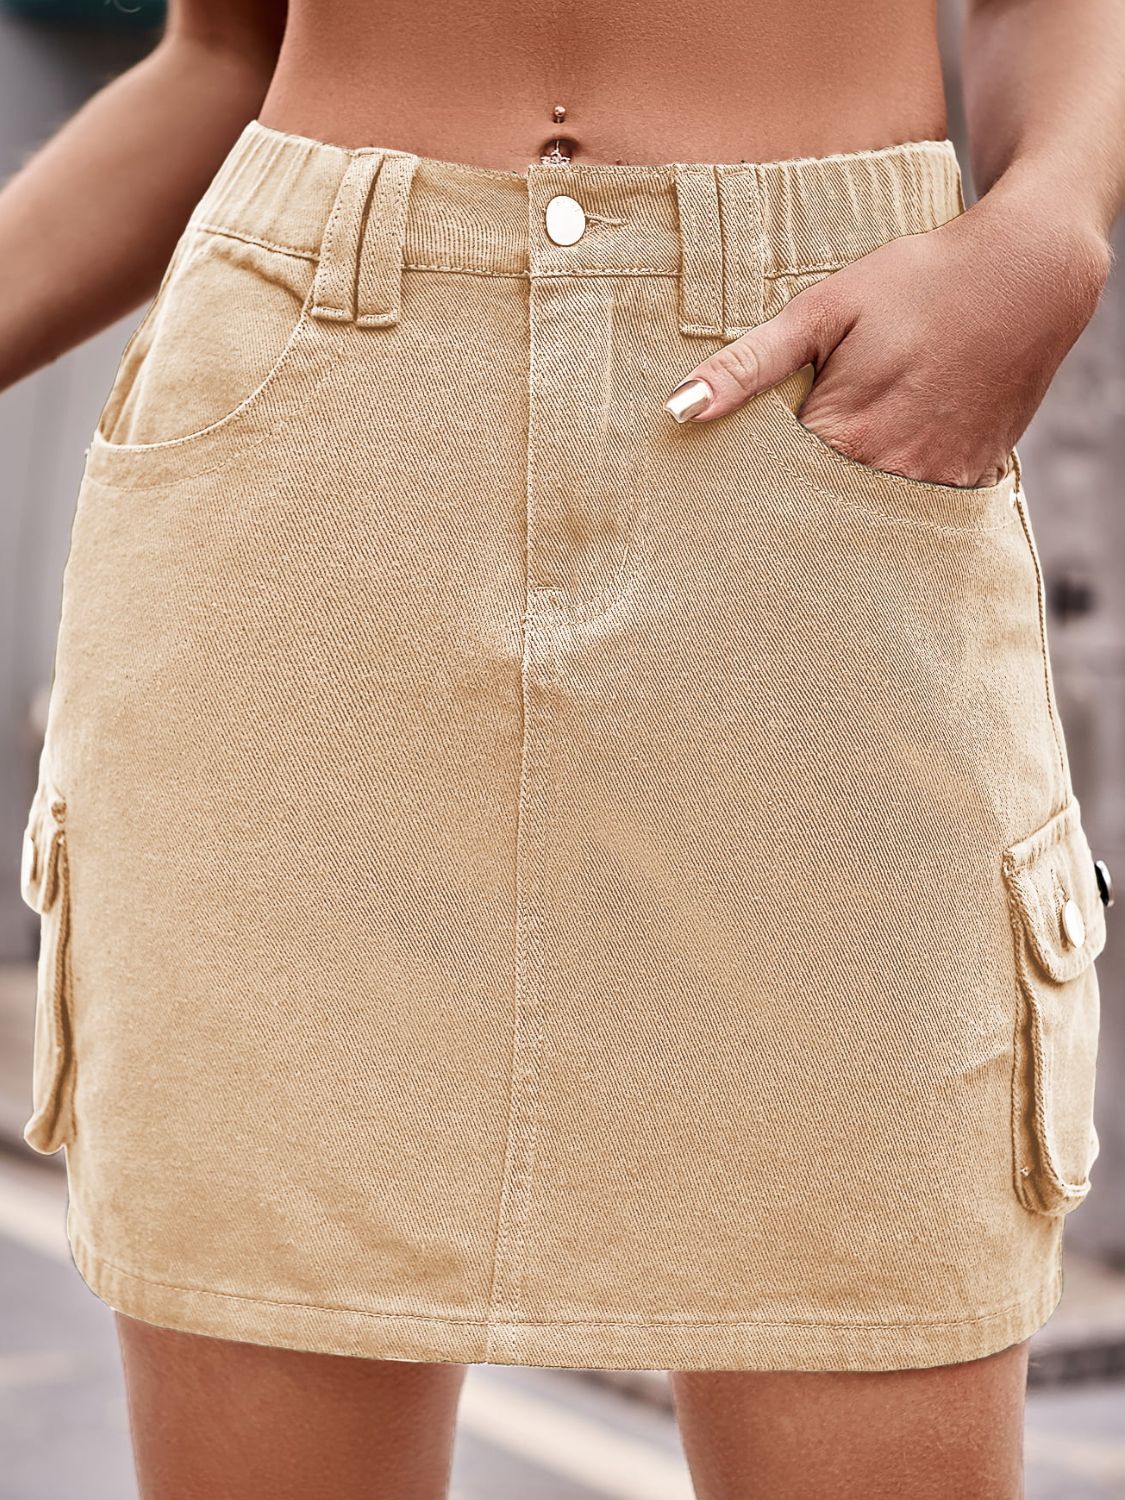 Denim Mini Skirt with Pockets - Tangerine Goddess